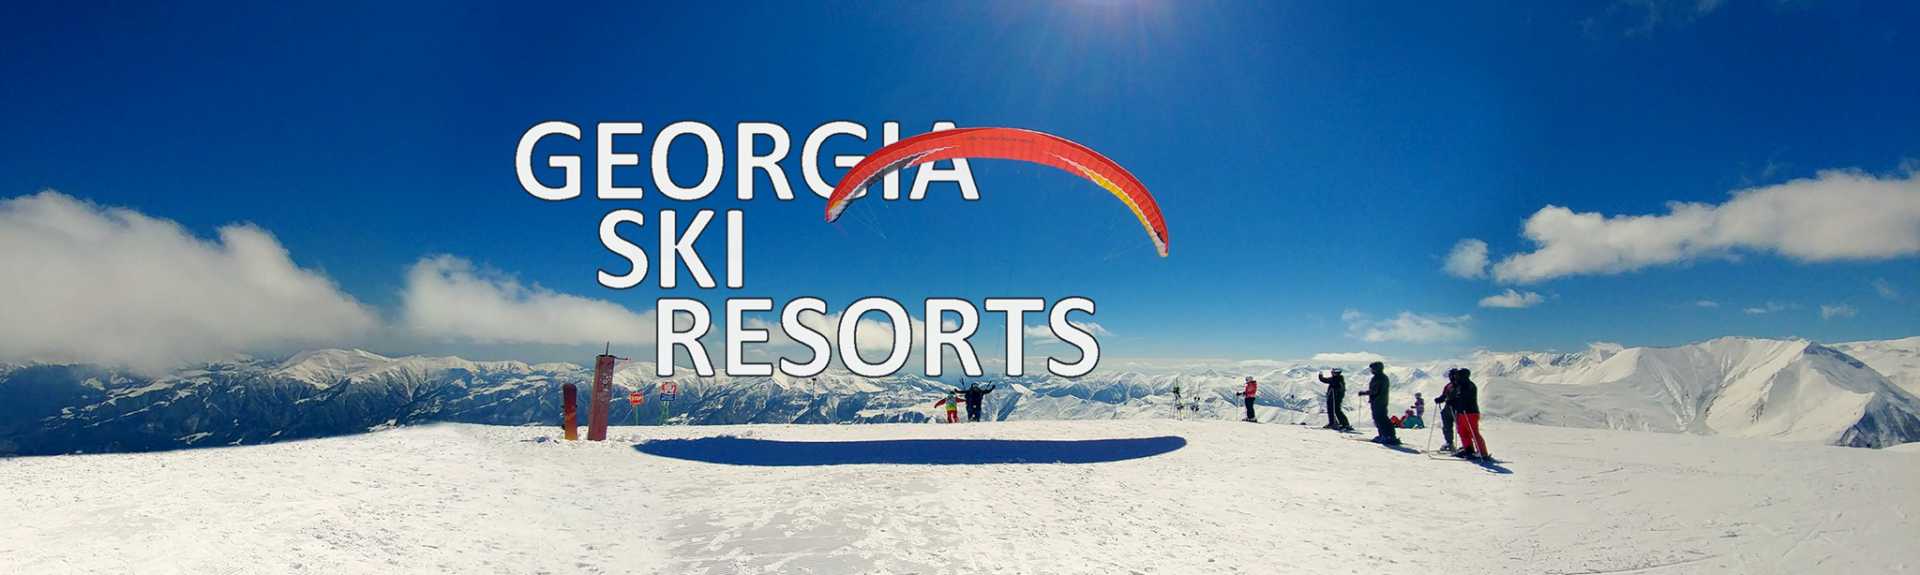 Georgia Ski Resorts